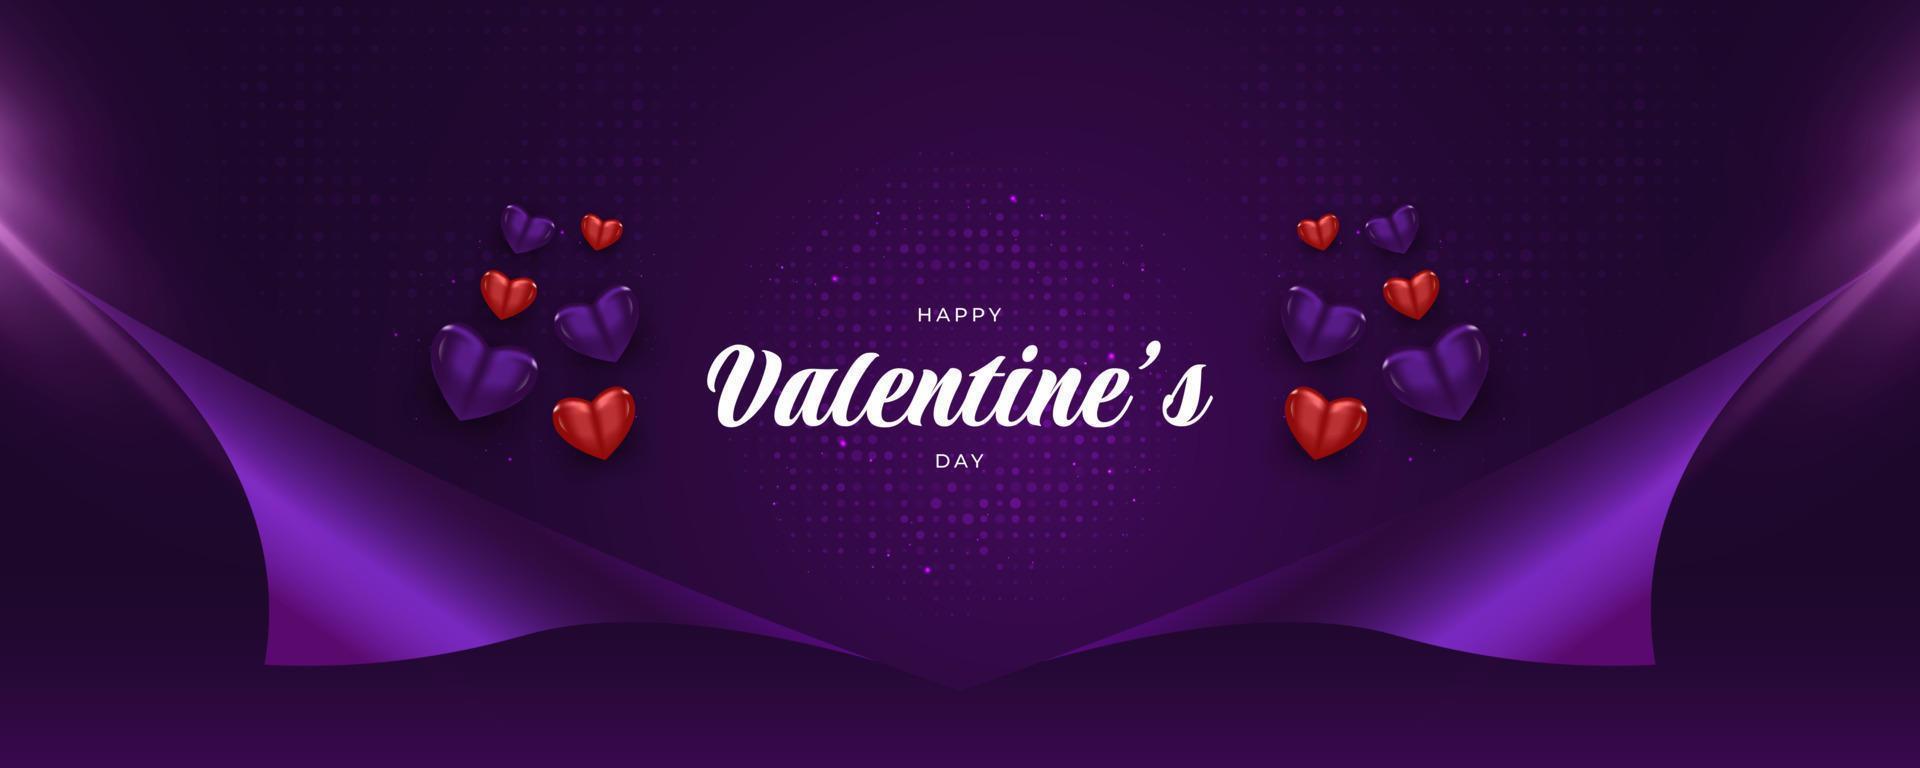 banner del día de san valentín con linda ilustración de corazón aislado sobre fondo púrpura y concepto de papel de regalo. elementos de decoración del día de san valentín vector